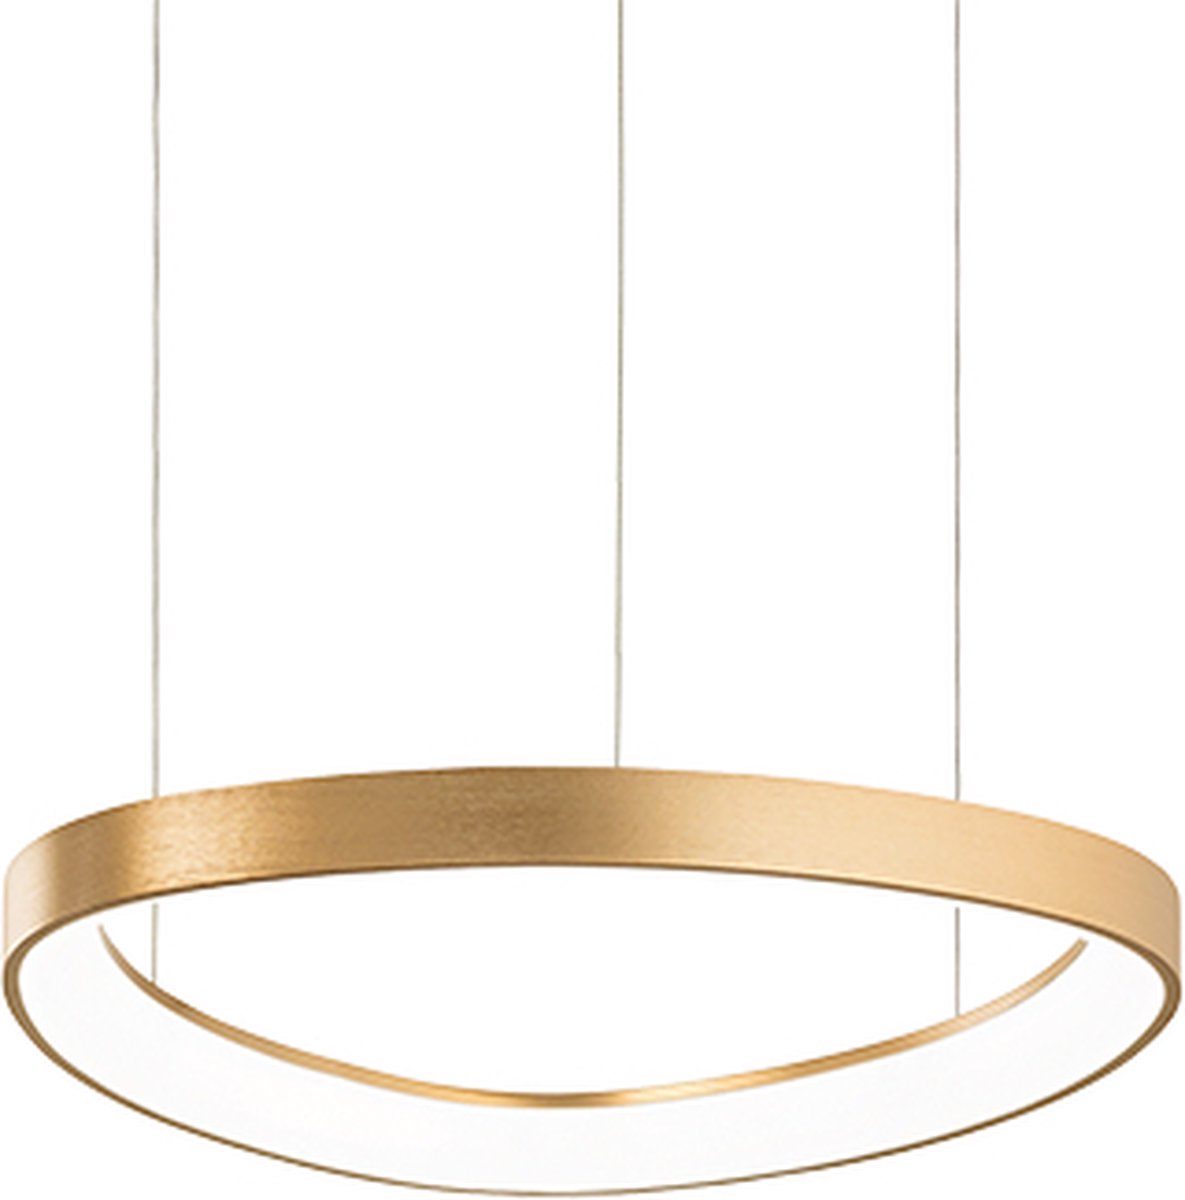 Ideal Lux - Gemini - Hanglamp - Metaal - LED - Messing - Voor binnen - Lampen - Woonkamer - Eetkamer - Keuken